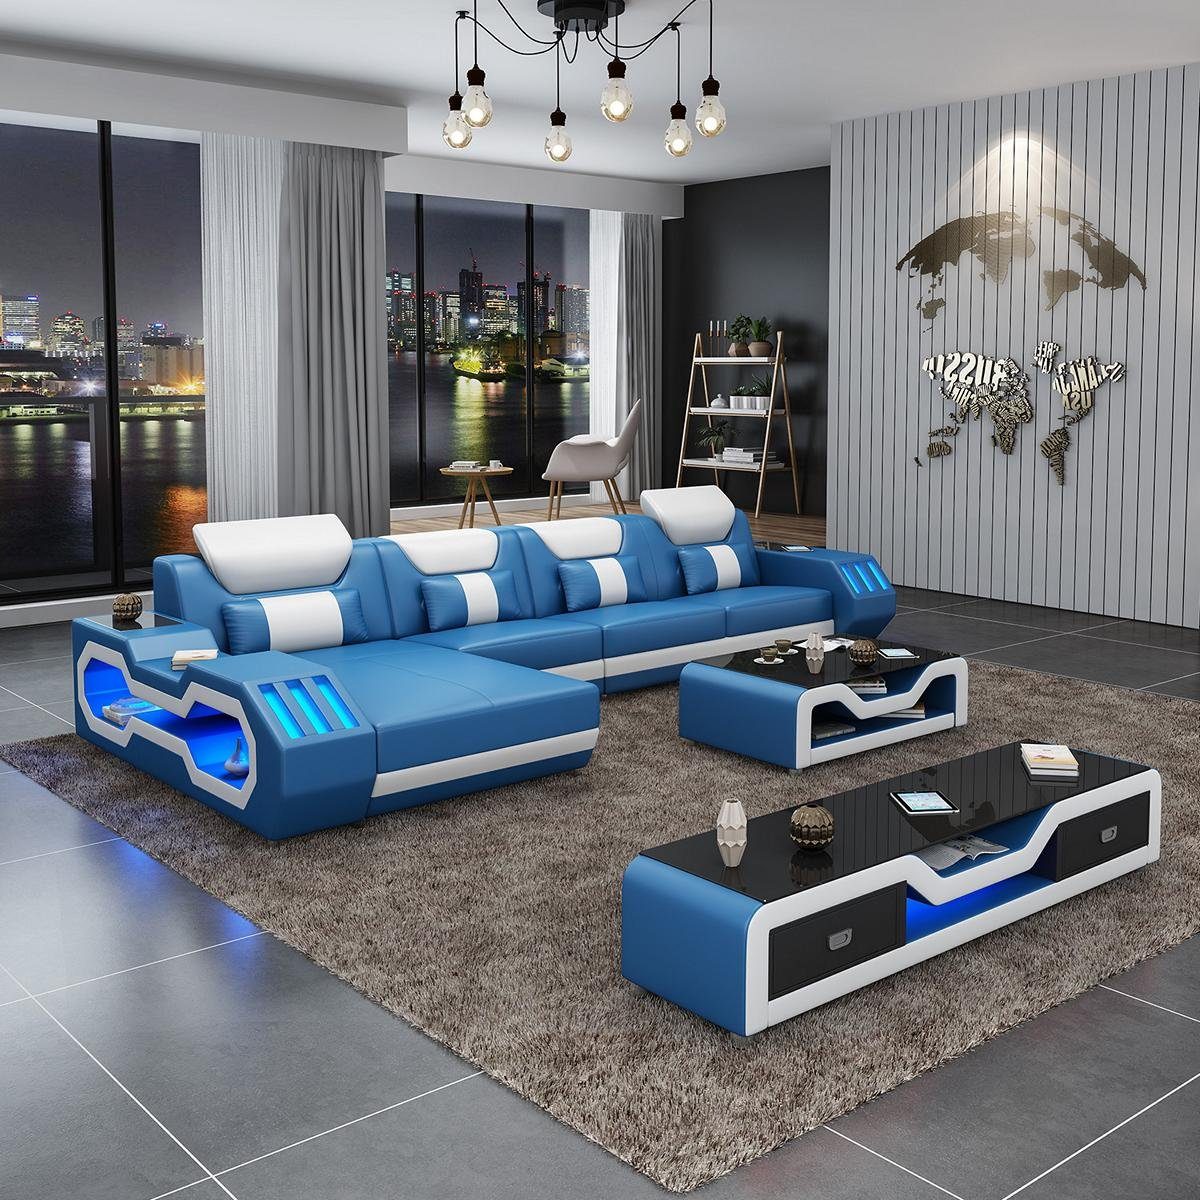 JVmoebel Wohnzimmer-Set, Modern Couch Wohnlandschaft Ledersofa Sofagarnitur Sofa L-Form Blau/Weiß